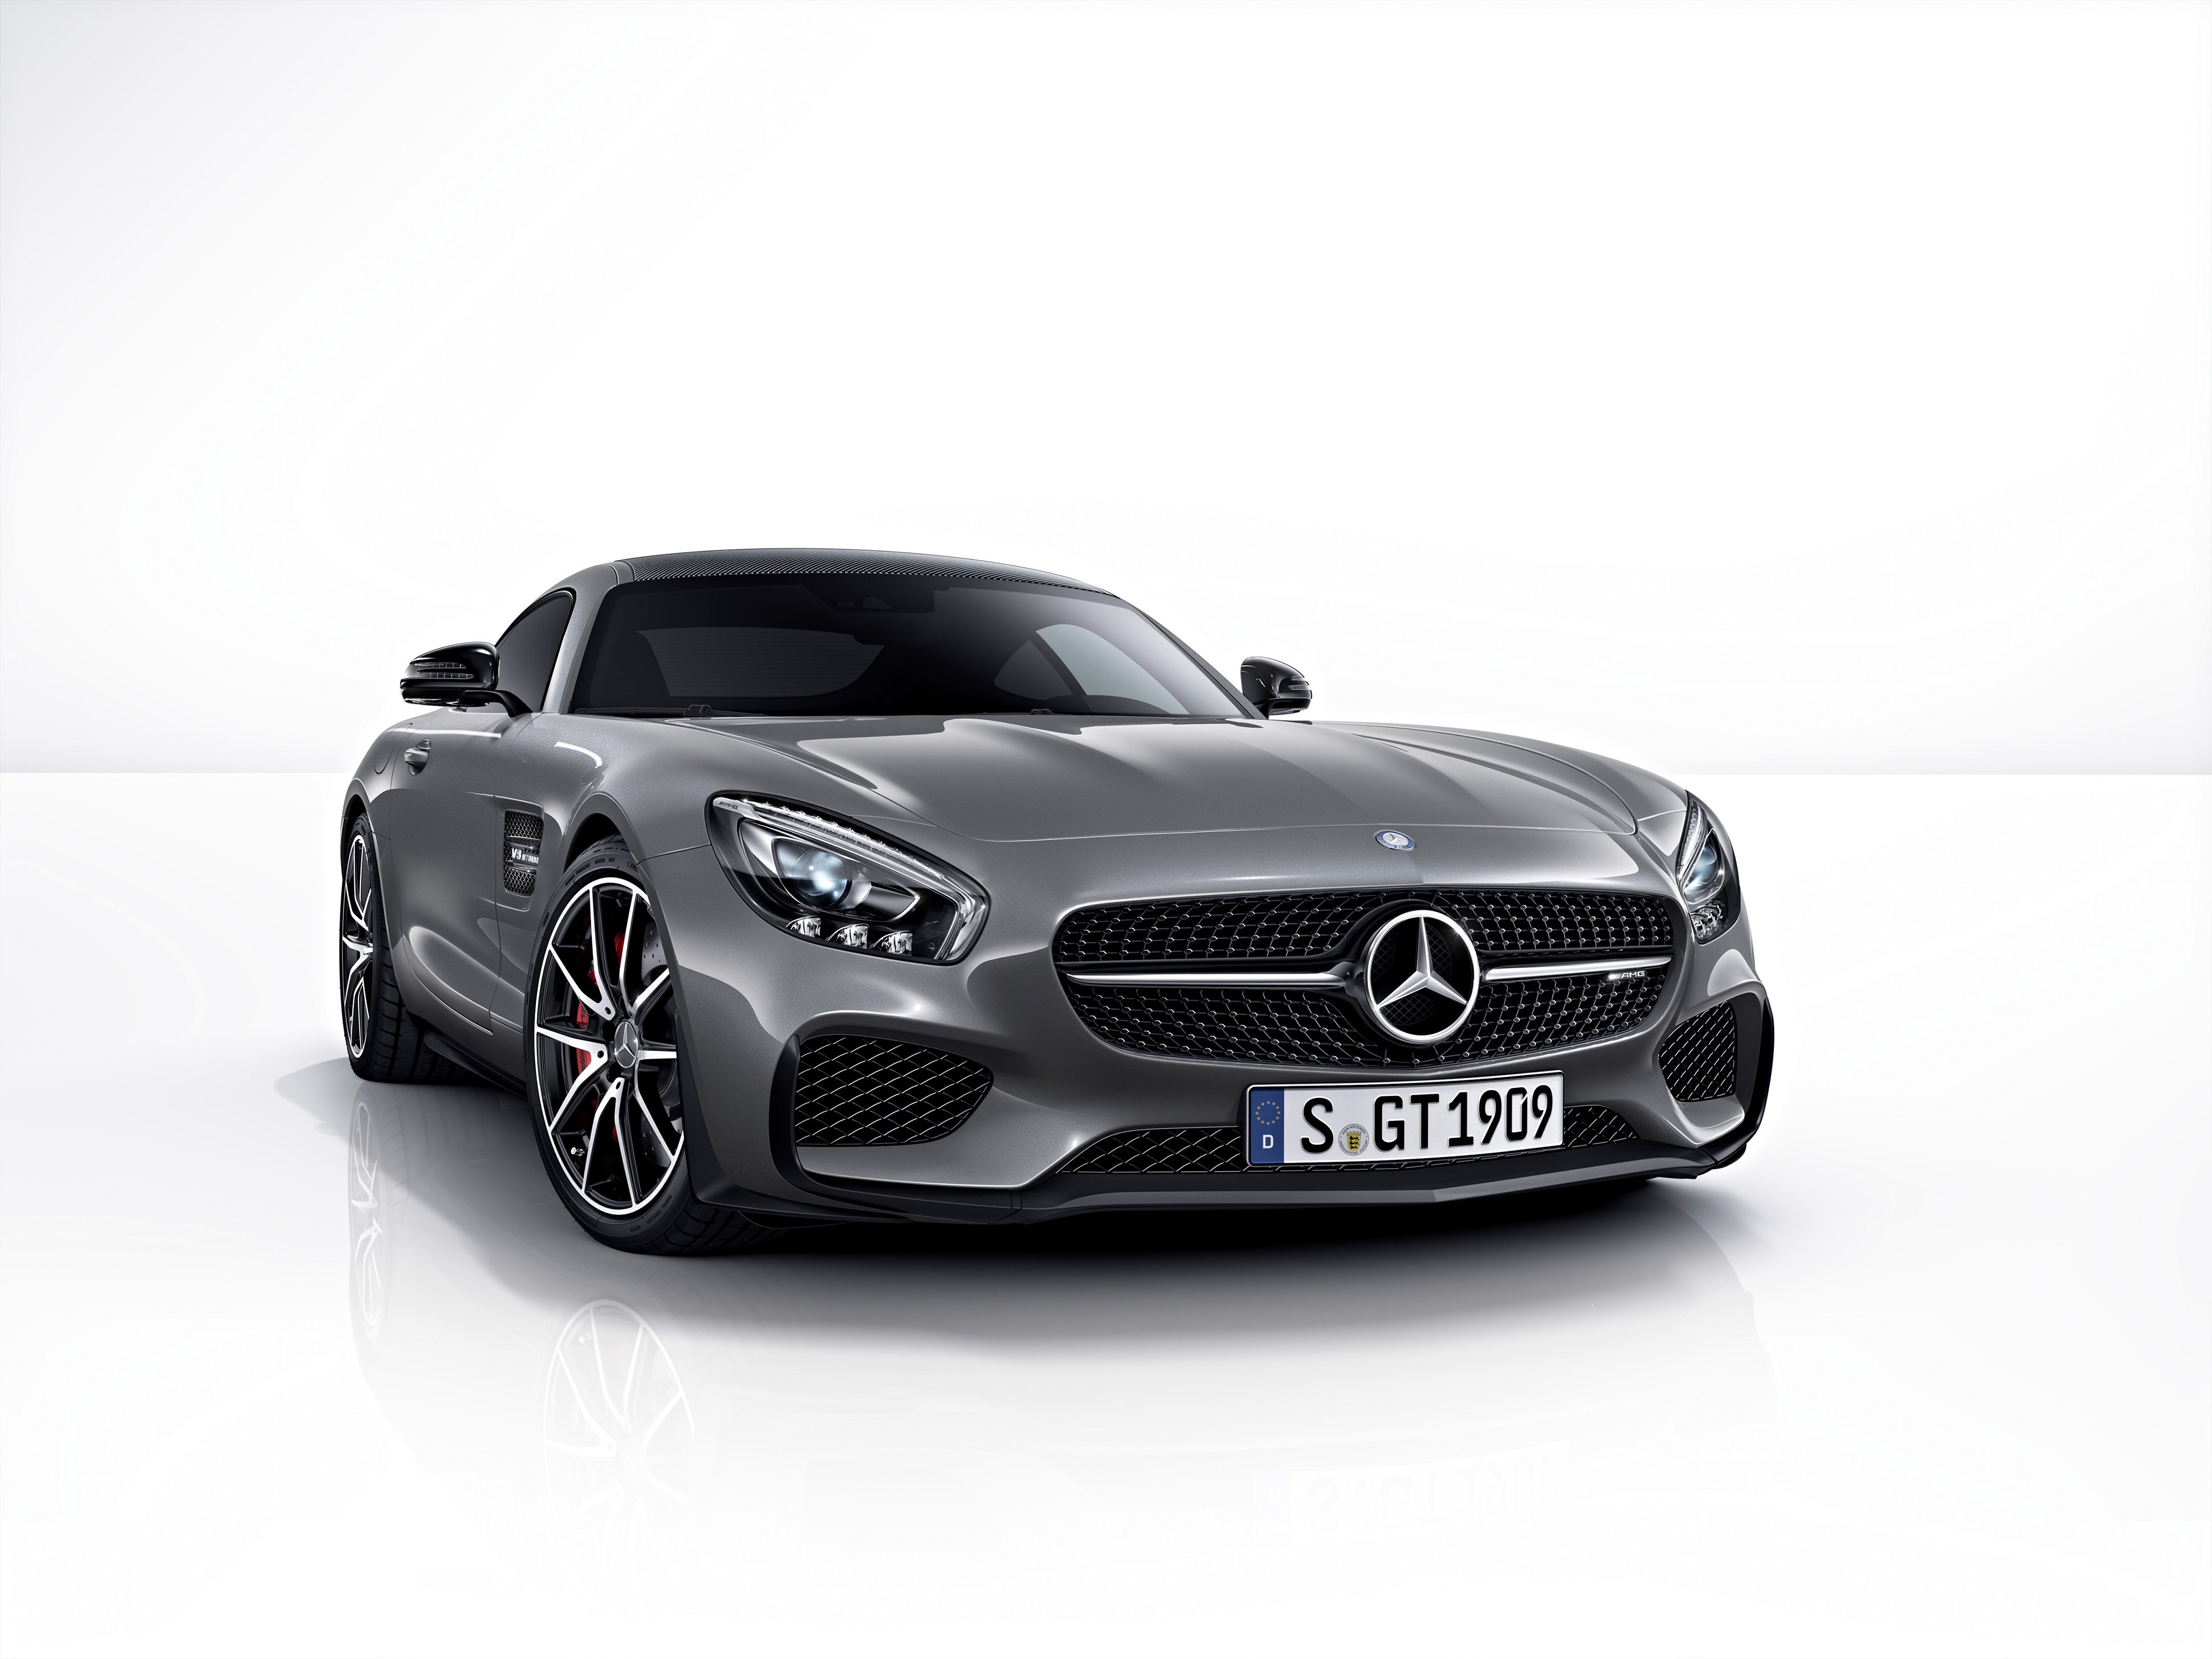 2016, Mercedes, Benz, Amg, G t, Edition 1, Supercar, Gts Wallpaper